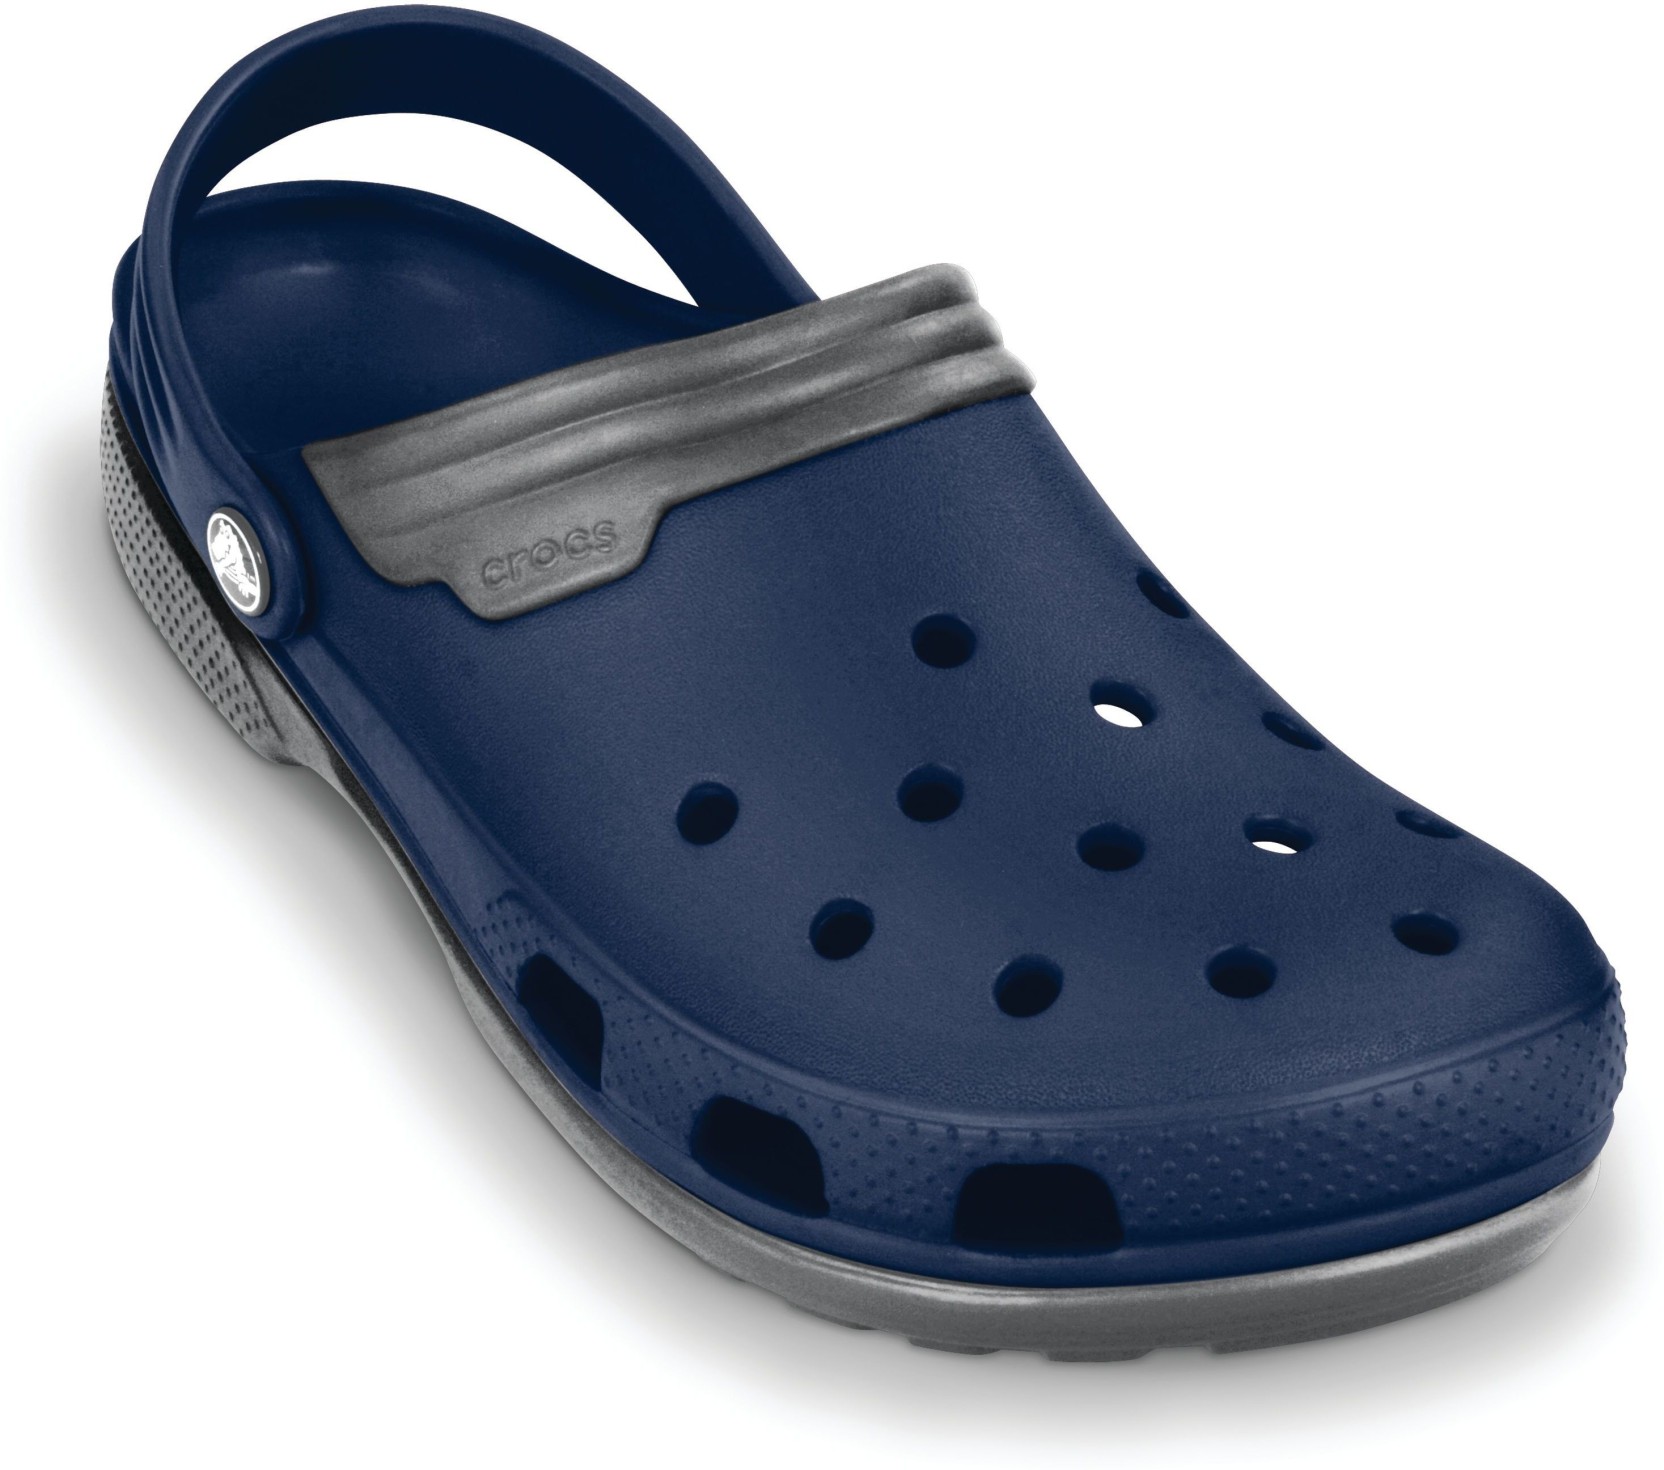 Crocs Men Navy/Smoke Sandals - Buy Crocs Men Navy/Smoke Sandals Online ...